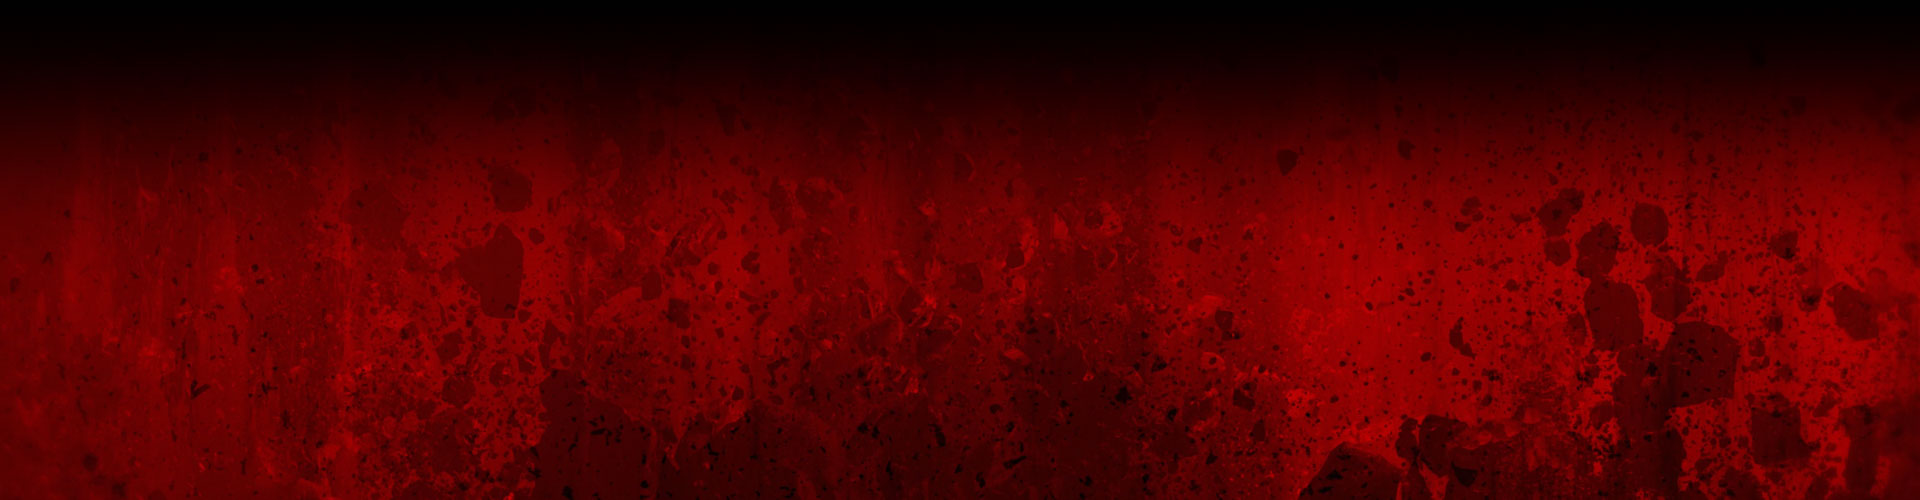 Eine rotes Wand, die mit dunkler Spritzer und Bildern zerstörter Felsen bedeckt ist